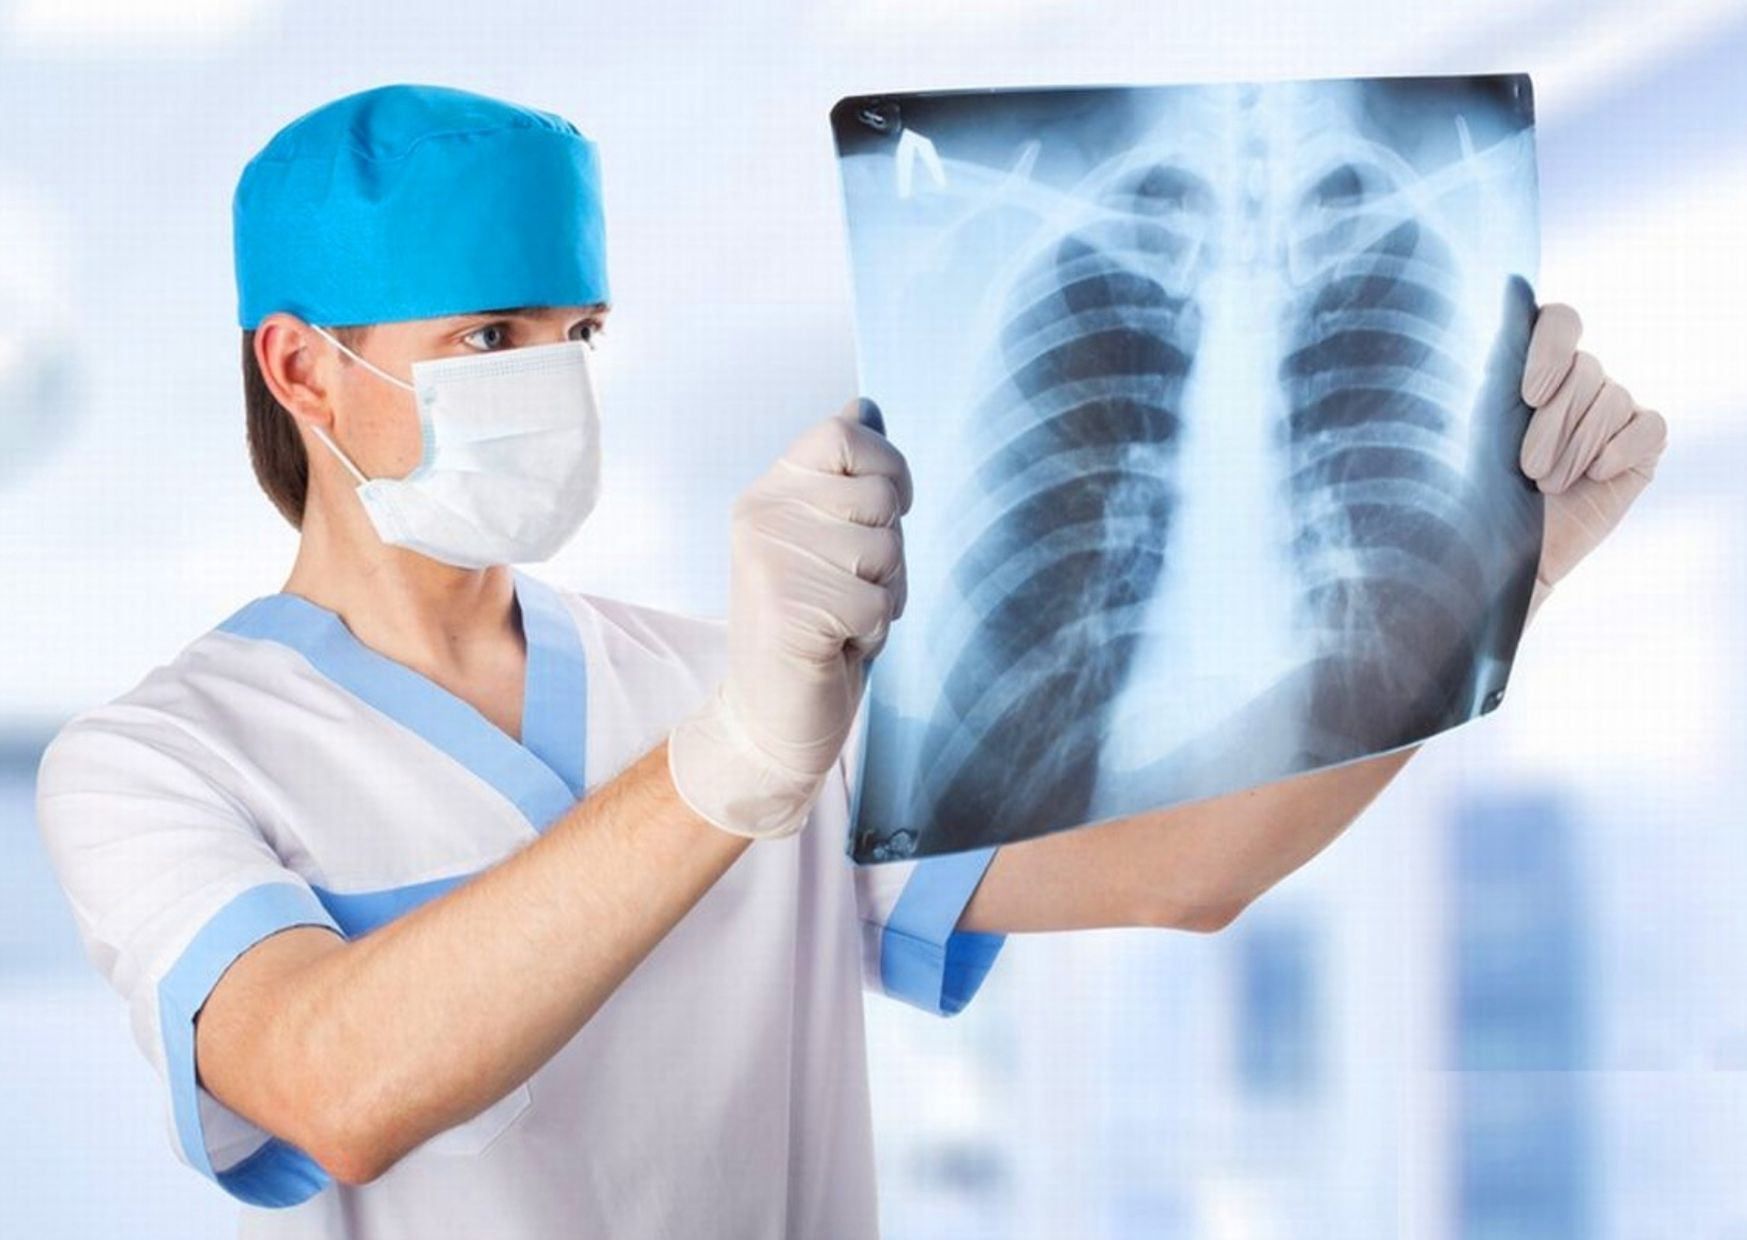 Рентгеновская пленка и химреактивы по низким ценам